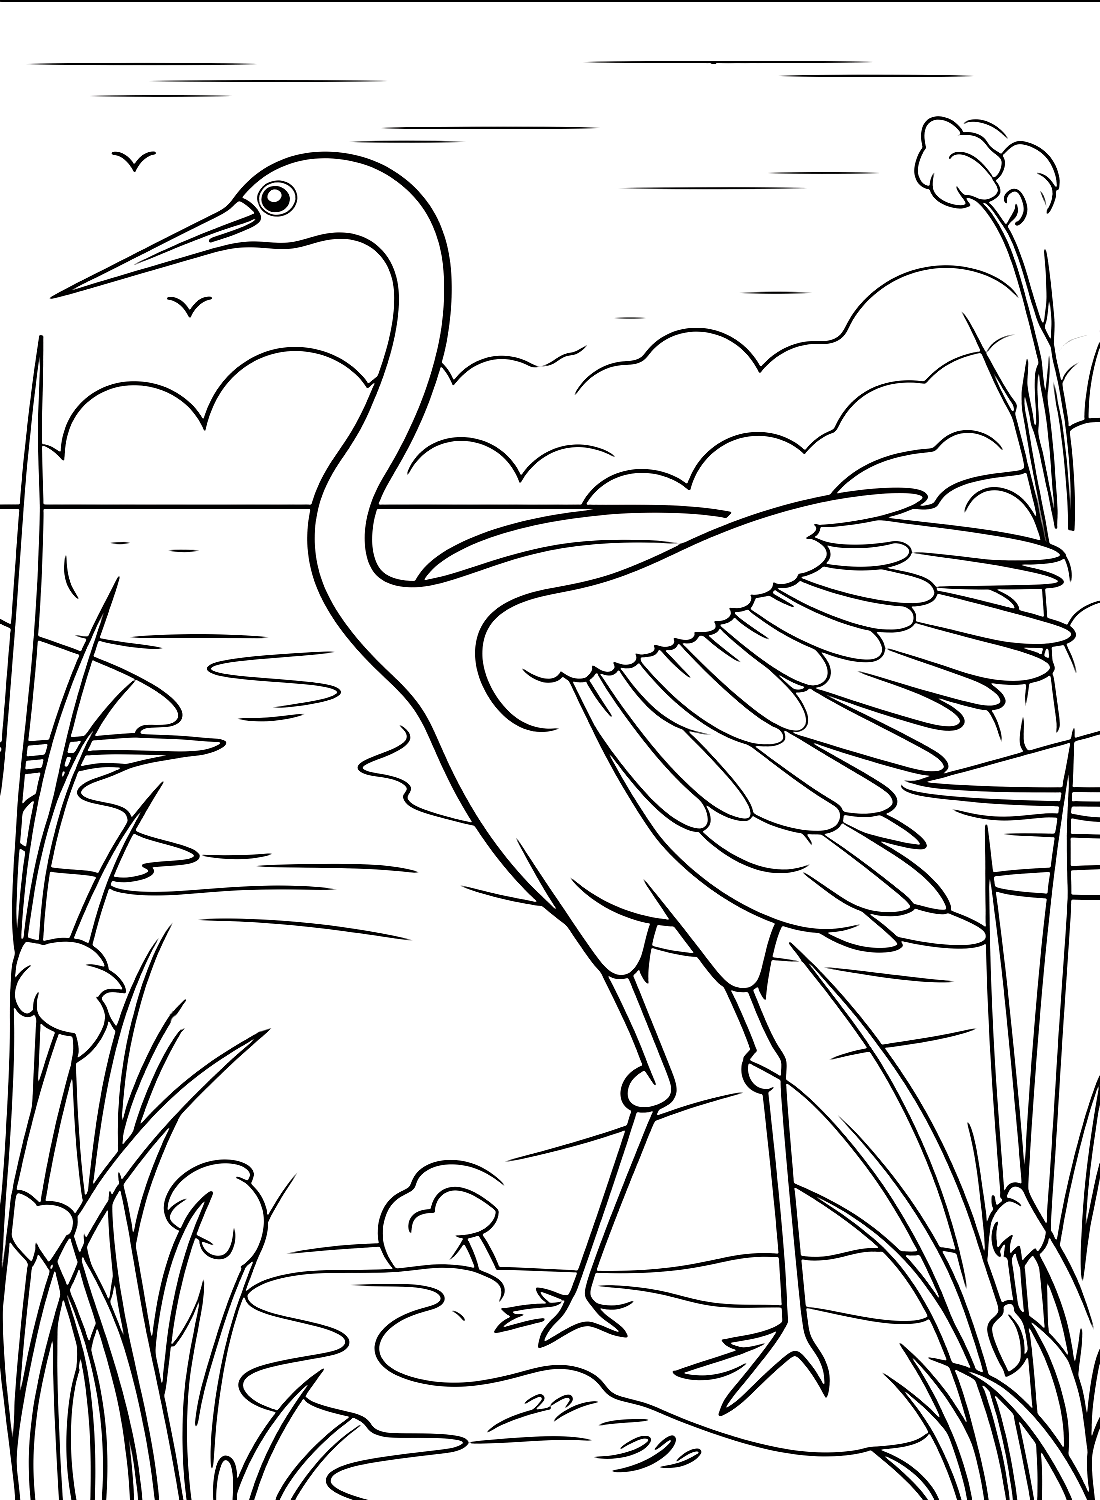 Crane Bird geht von Crane Bird auf die Jagd